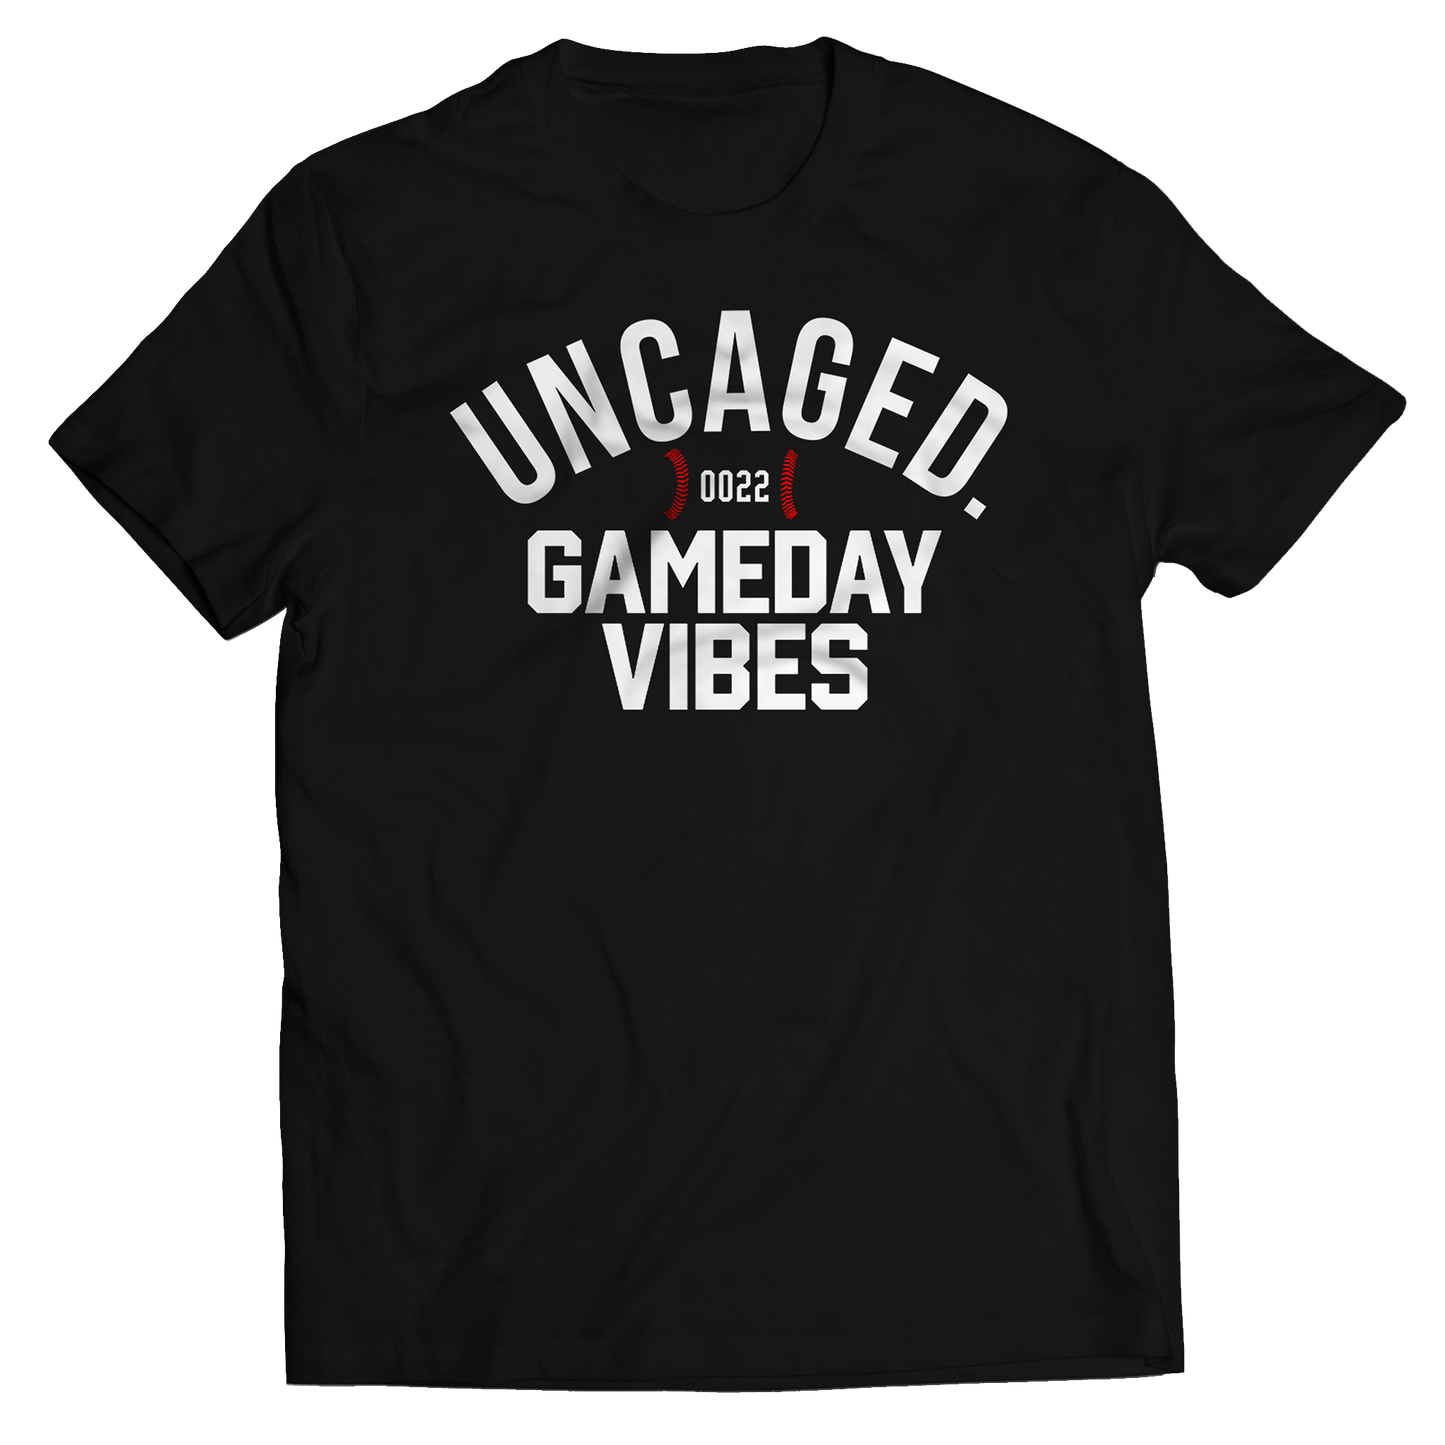 Gameday Vibes T-Shirt - Black